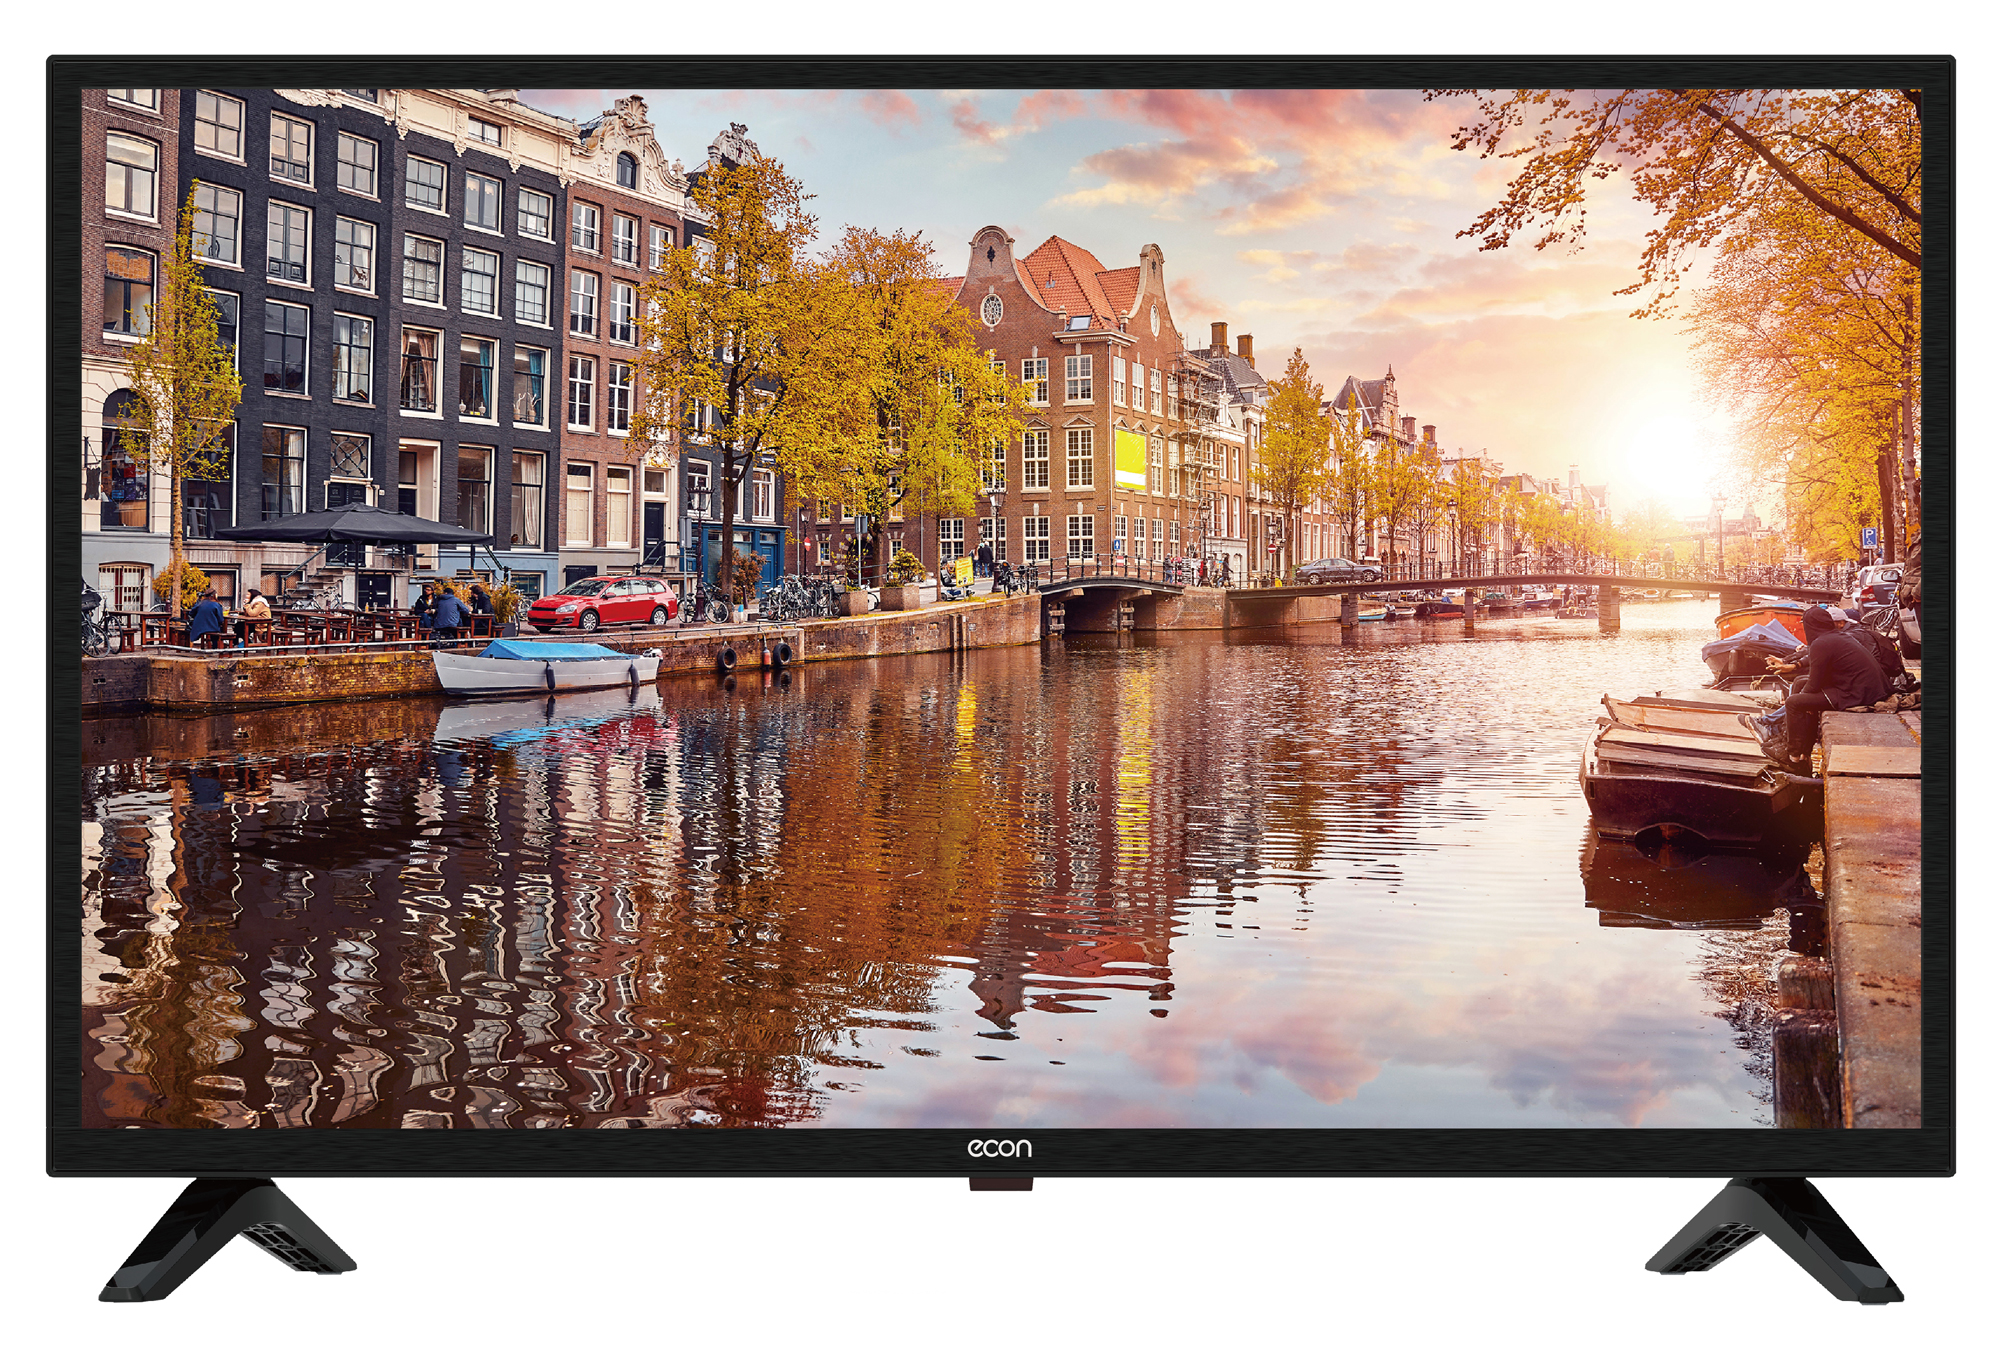 Картинка Smart телевизор ECON EX-32HS015B по разумной цене купить в интернет магазине mall.su